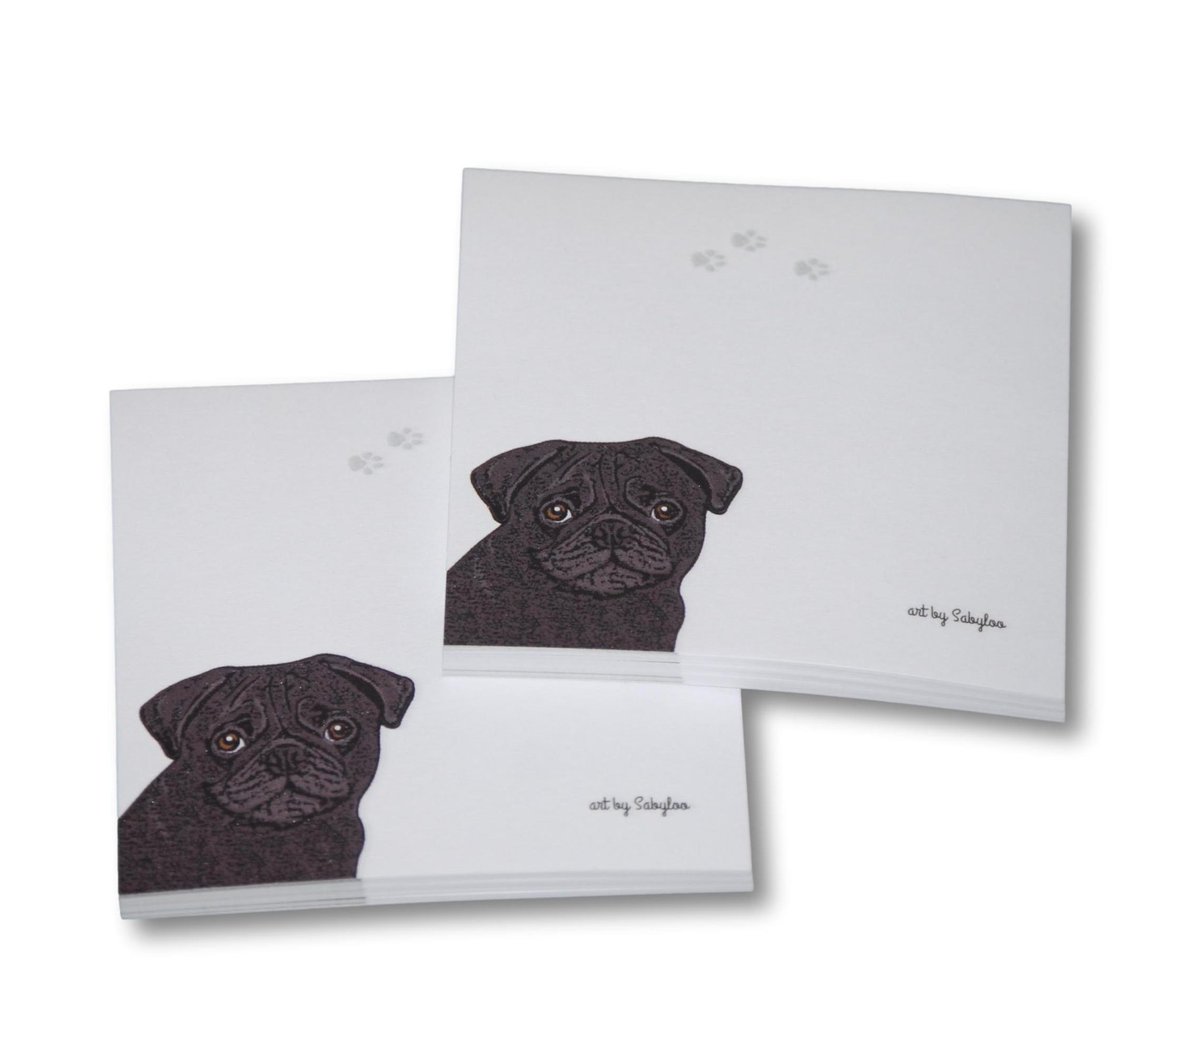 Restocked! Black Pug sticky notes 📝
dogloverstore.com/shop/pug-post-…
#pug #blackpug #puggifts #stickynotes #doggifts #dogloverstore #pugsoftwitter